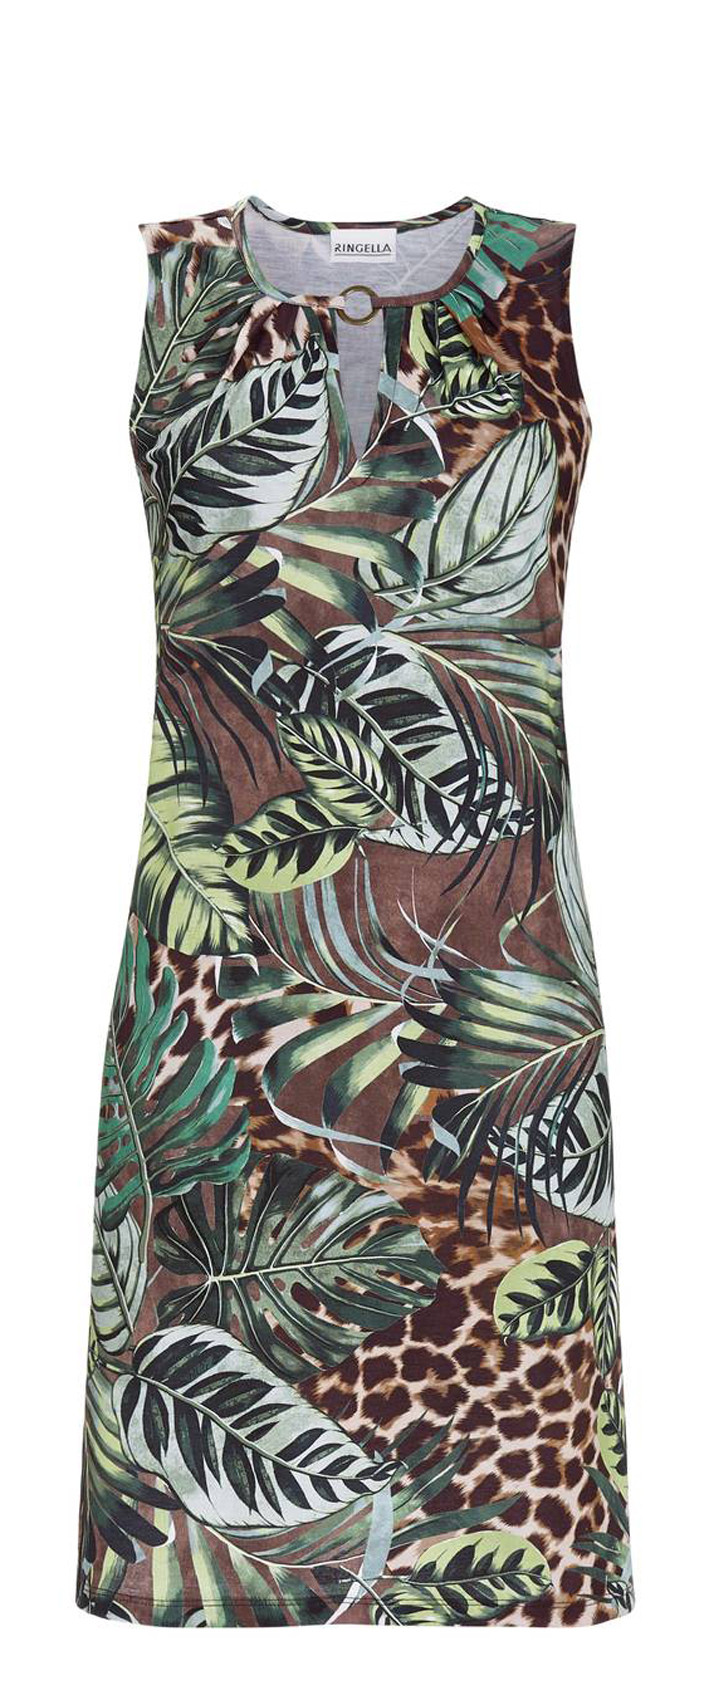 Ringella Damen Sommer Kleid ohne Arm Dschungel Bunt Viskose 46 48